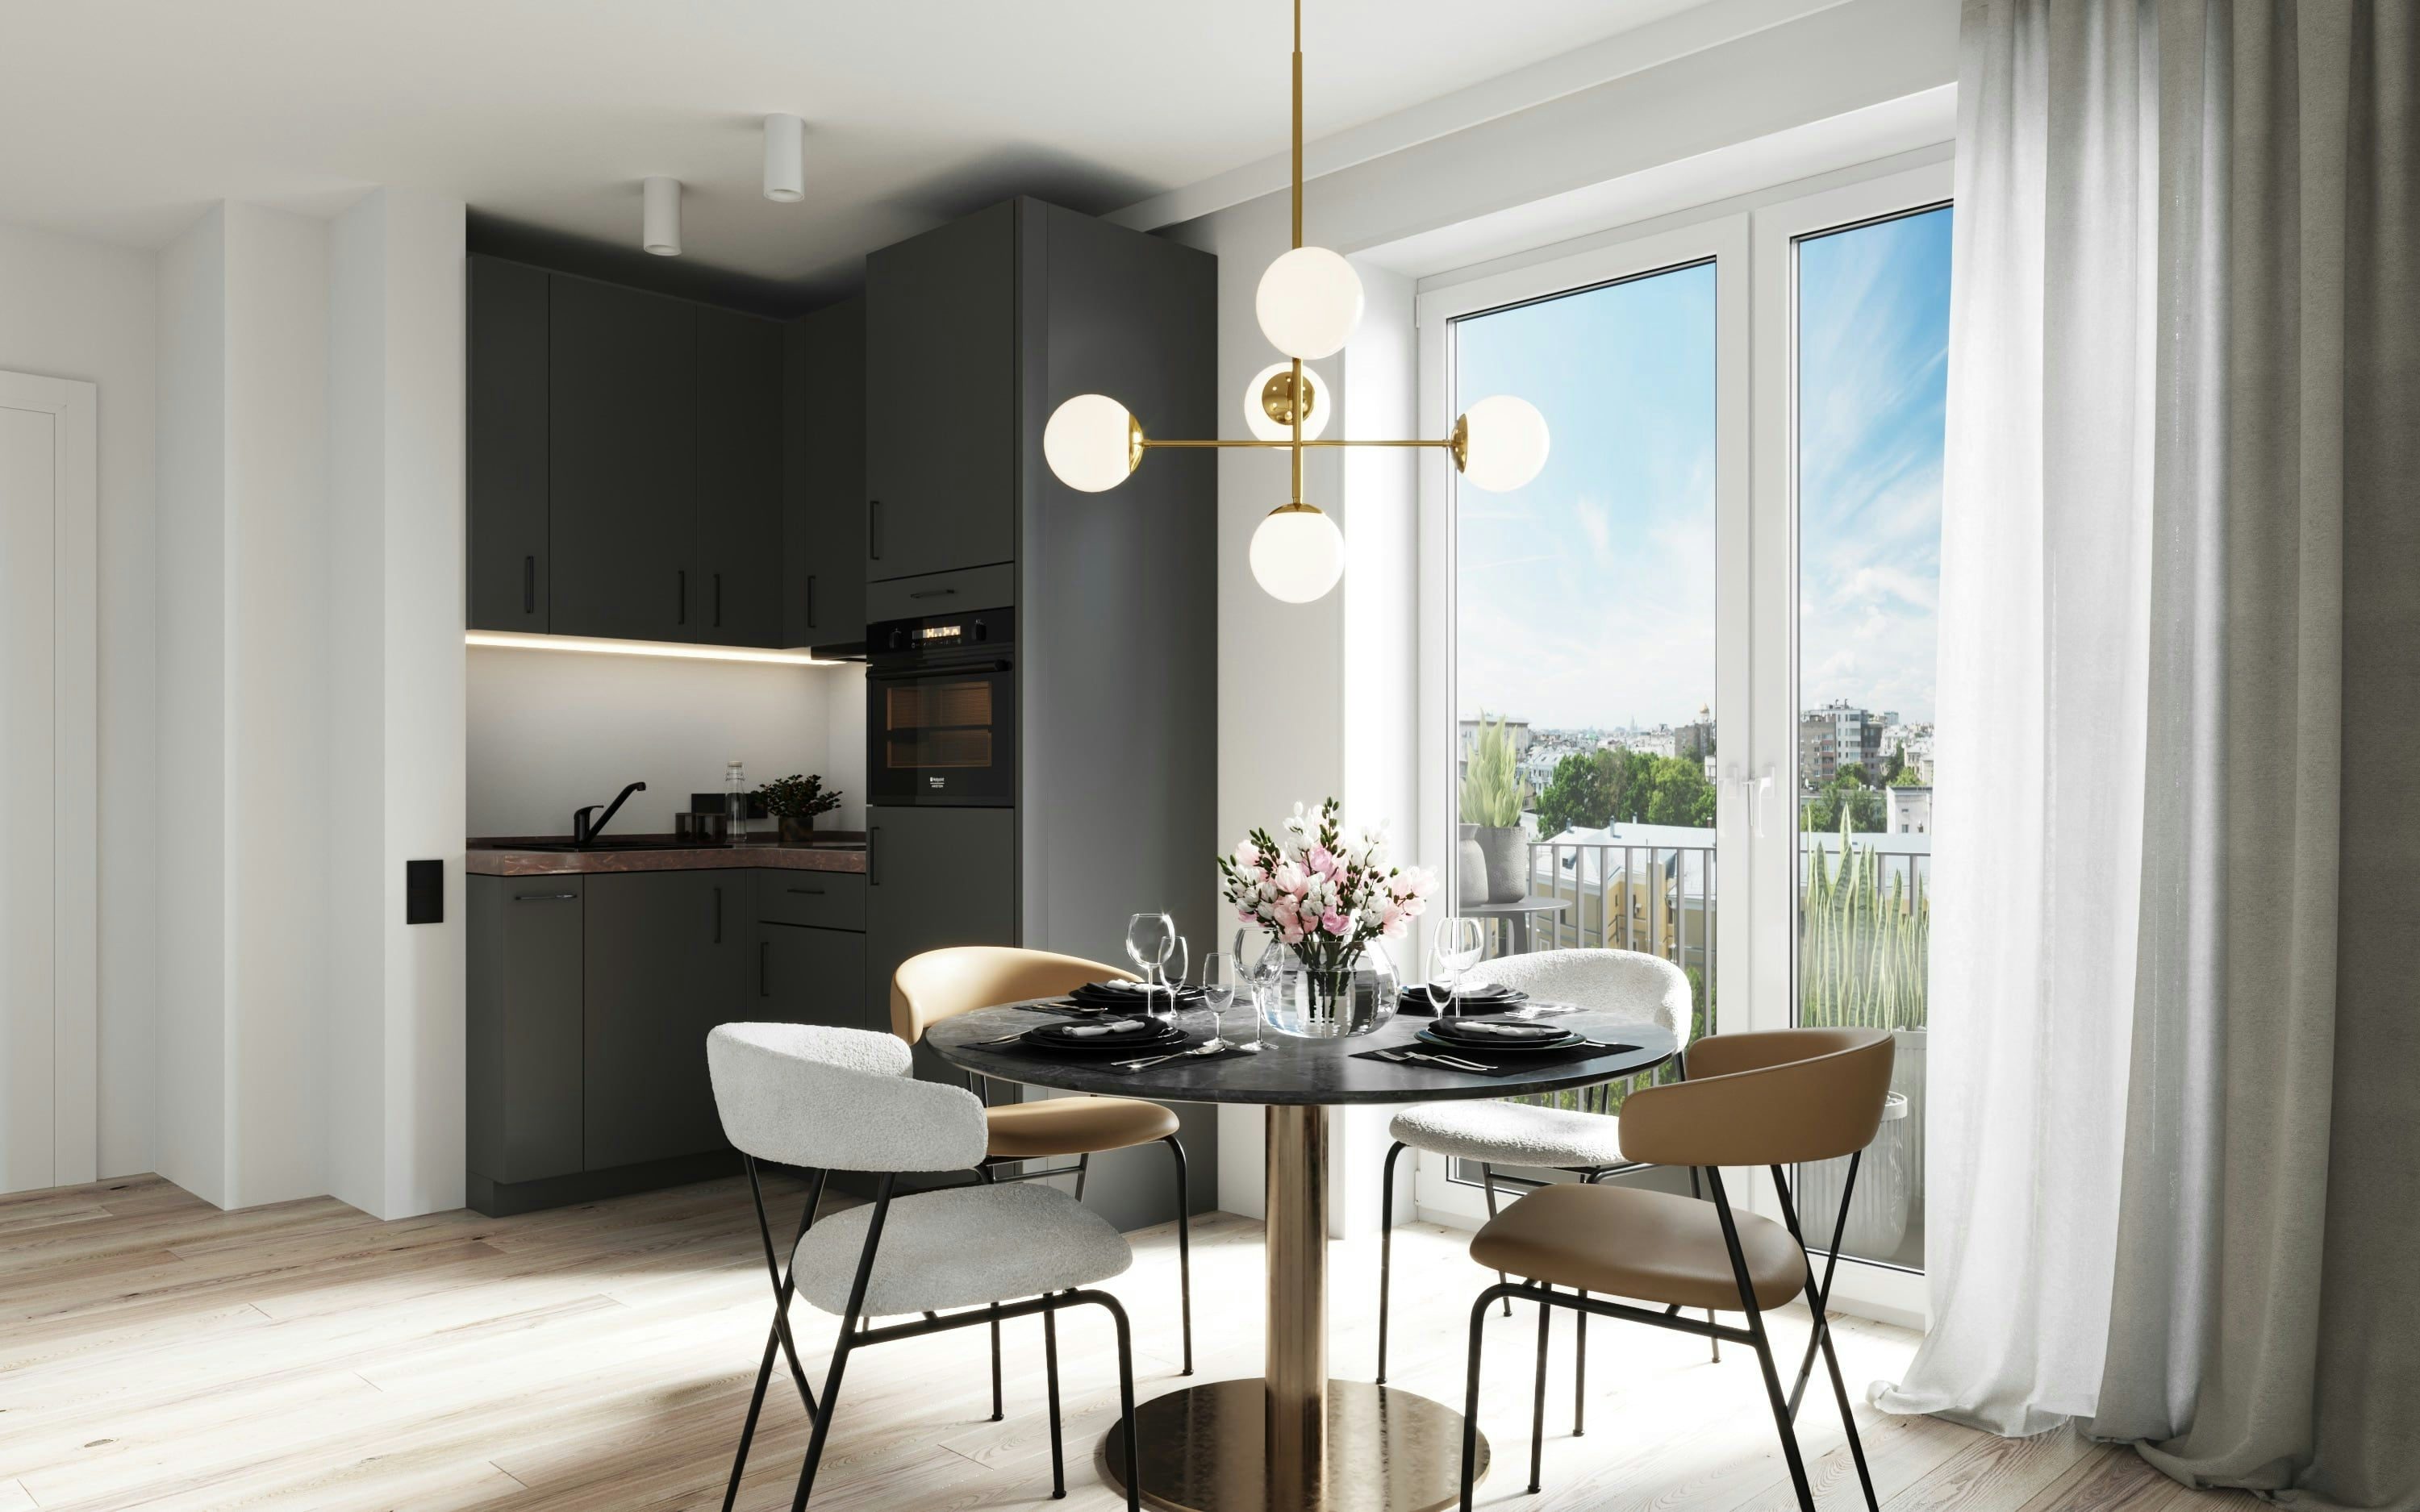 3D Architektur Innenvisualisierung von Essbereich und Küche in einer offenen Penthouse Wohnung in einem Mehrfamilienhaus in Hamburg Eimsbüttel, Deutschland